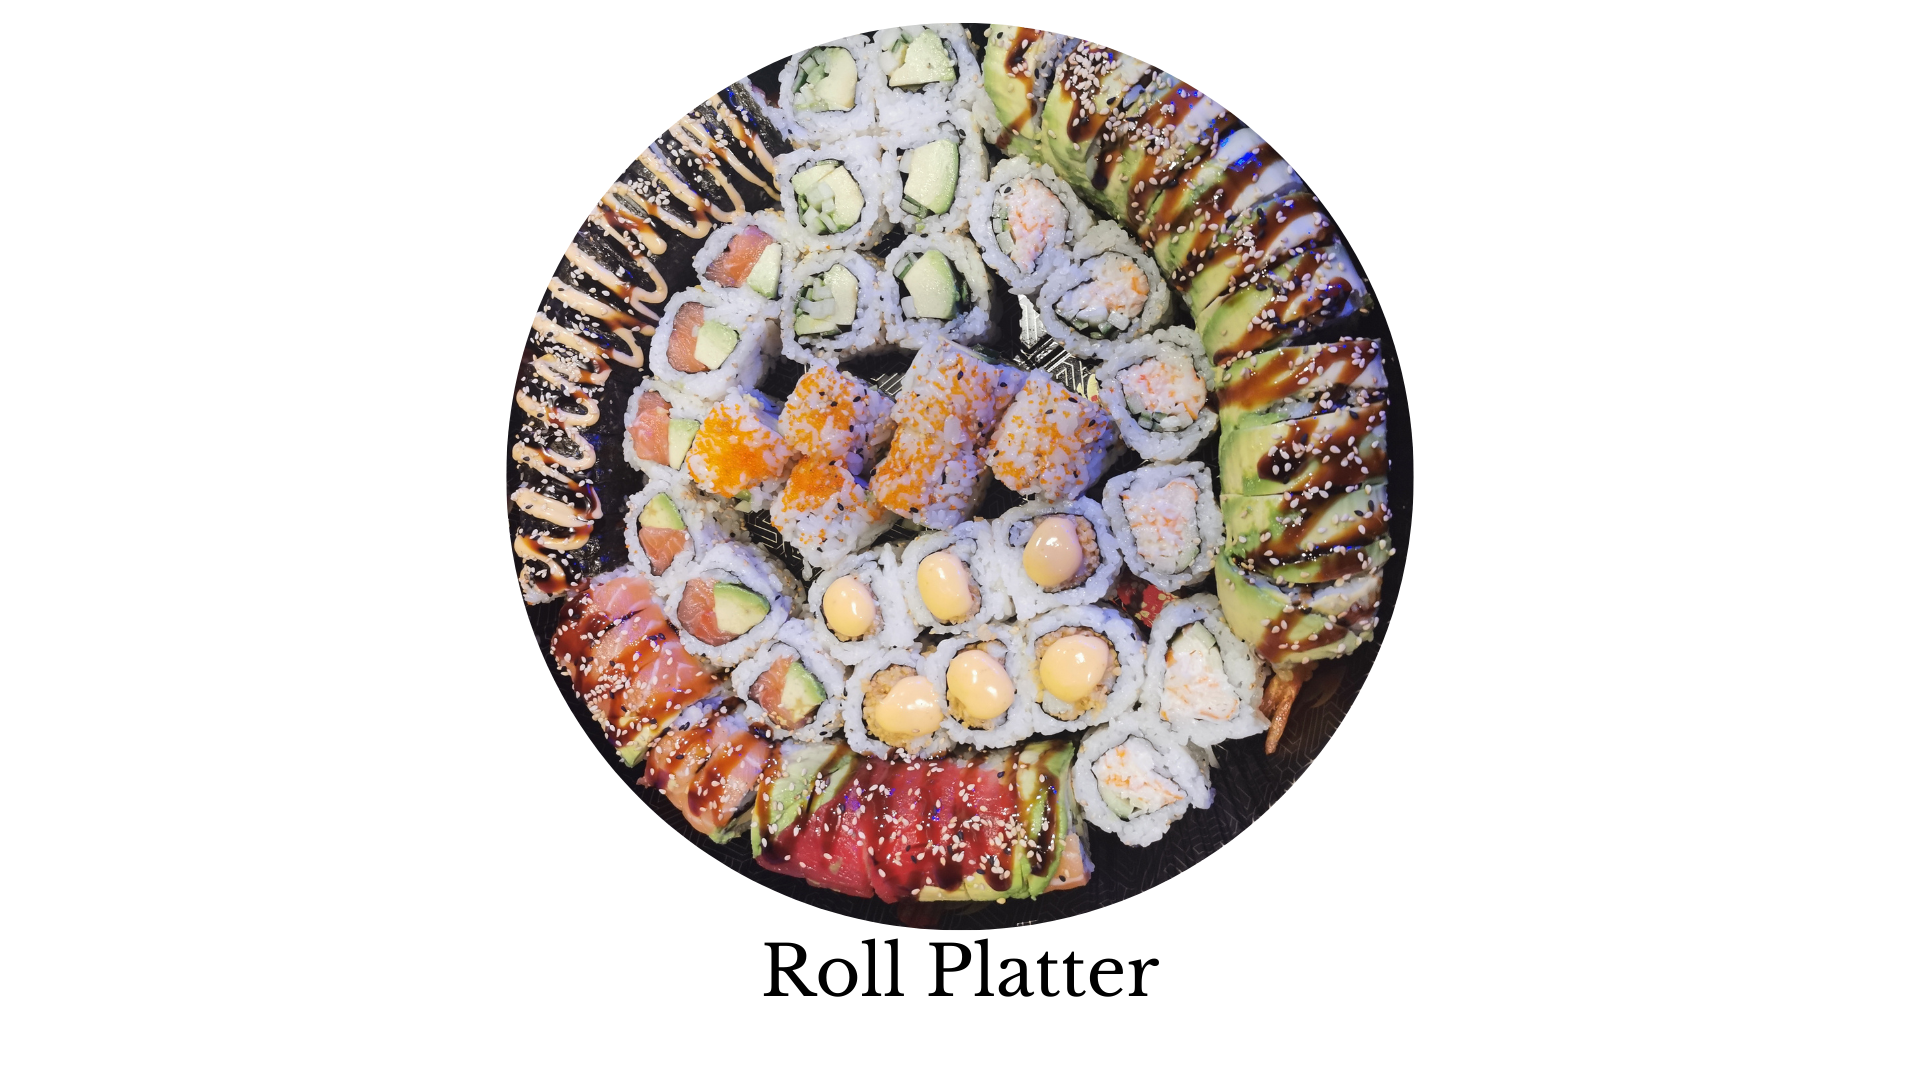 sushi platter, sushi, sashimi, sushi near me, sushi places near me, best sushi near me, sushi rice